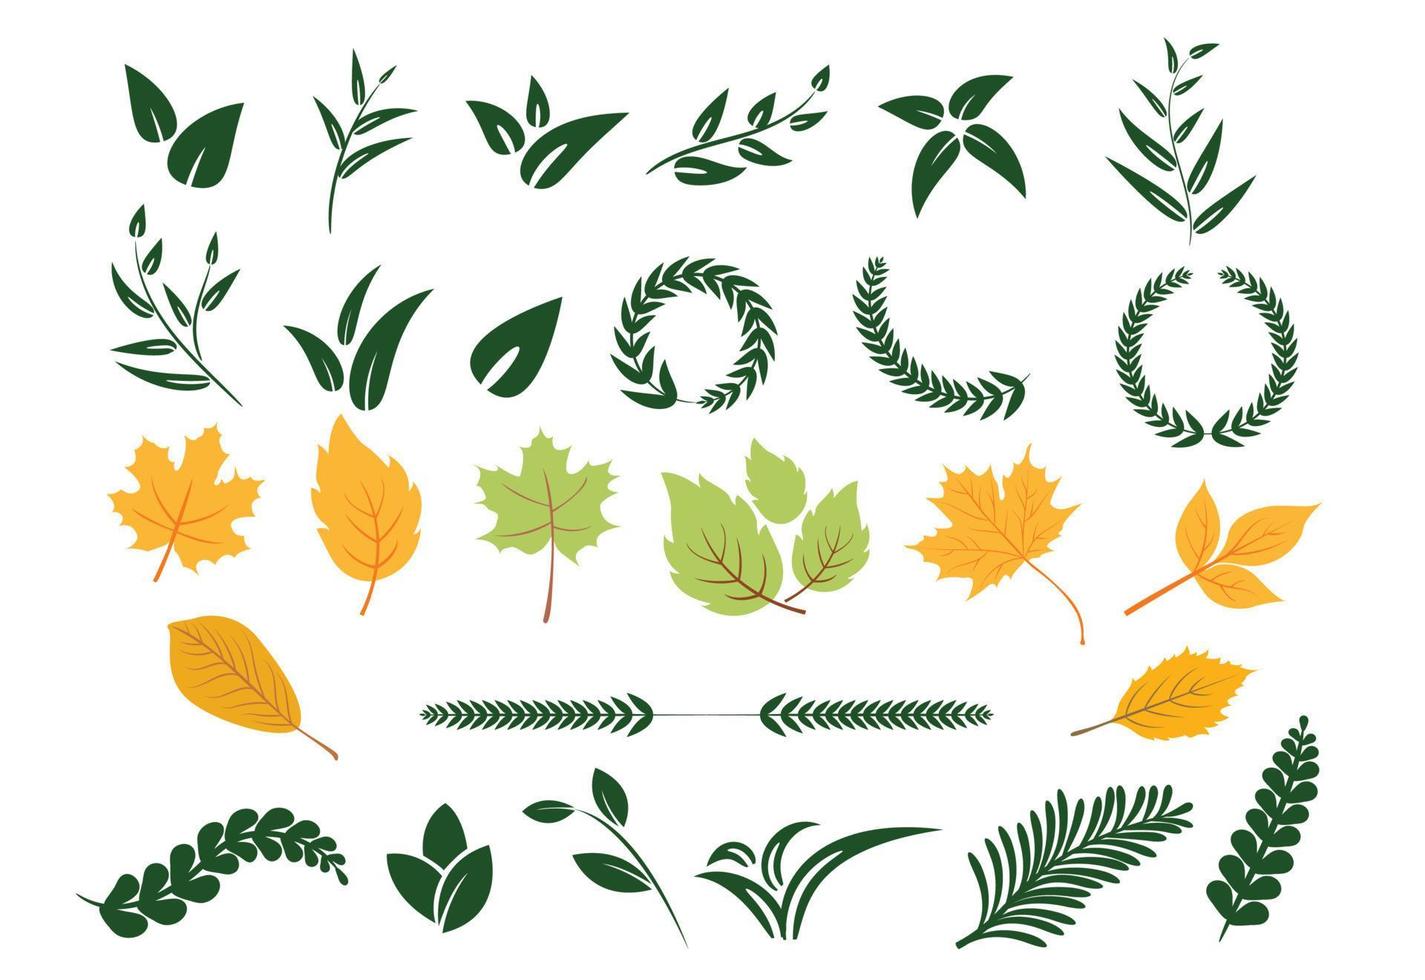 iconos de hojas verdes sobre fondo blanco, icono de hojas, logotipo de planta de hojas, hojas verdes de ecología natural vector